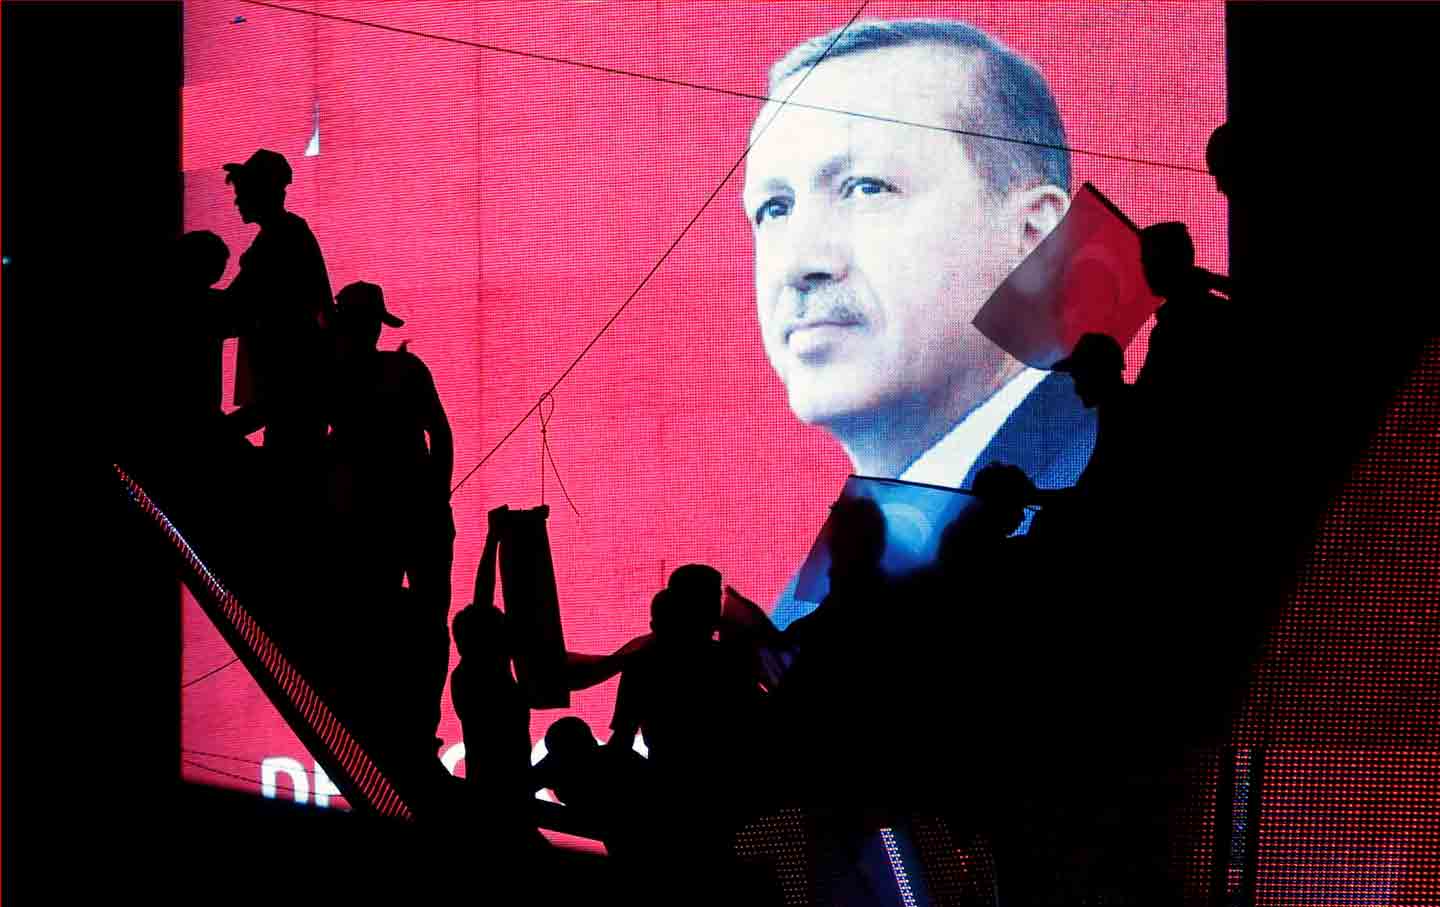 Erdogan Silhouette